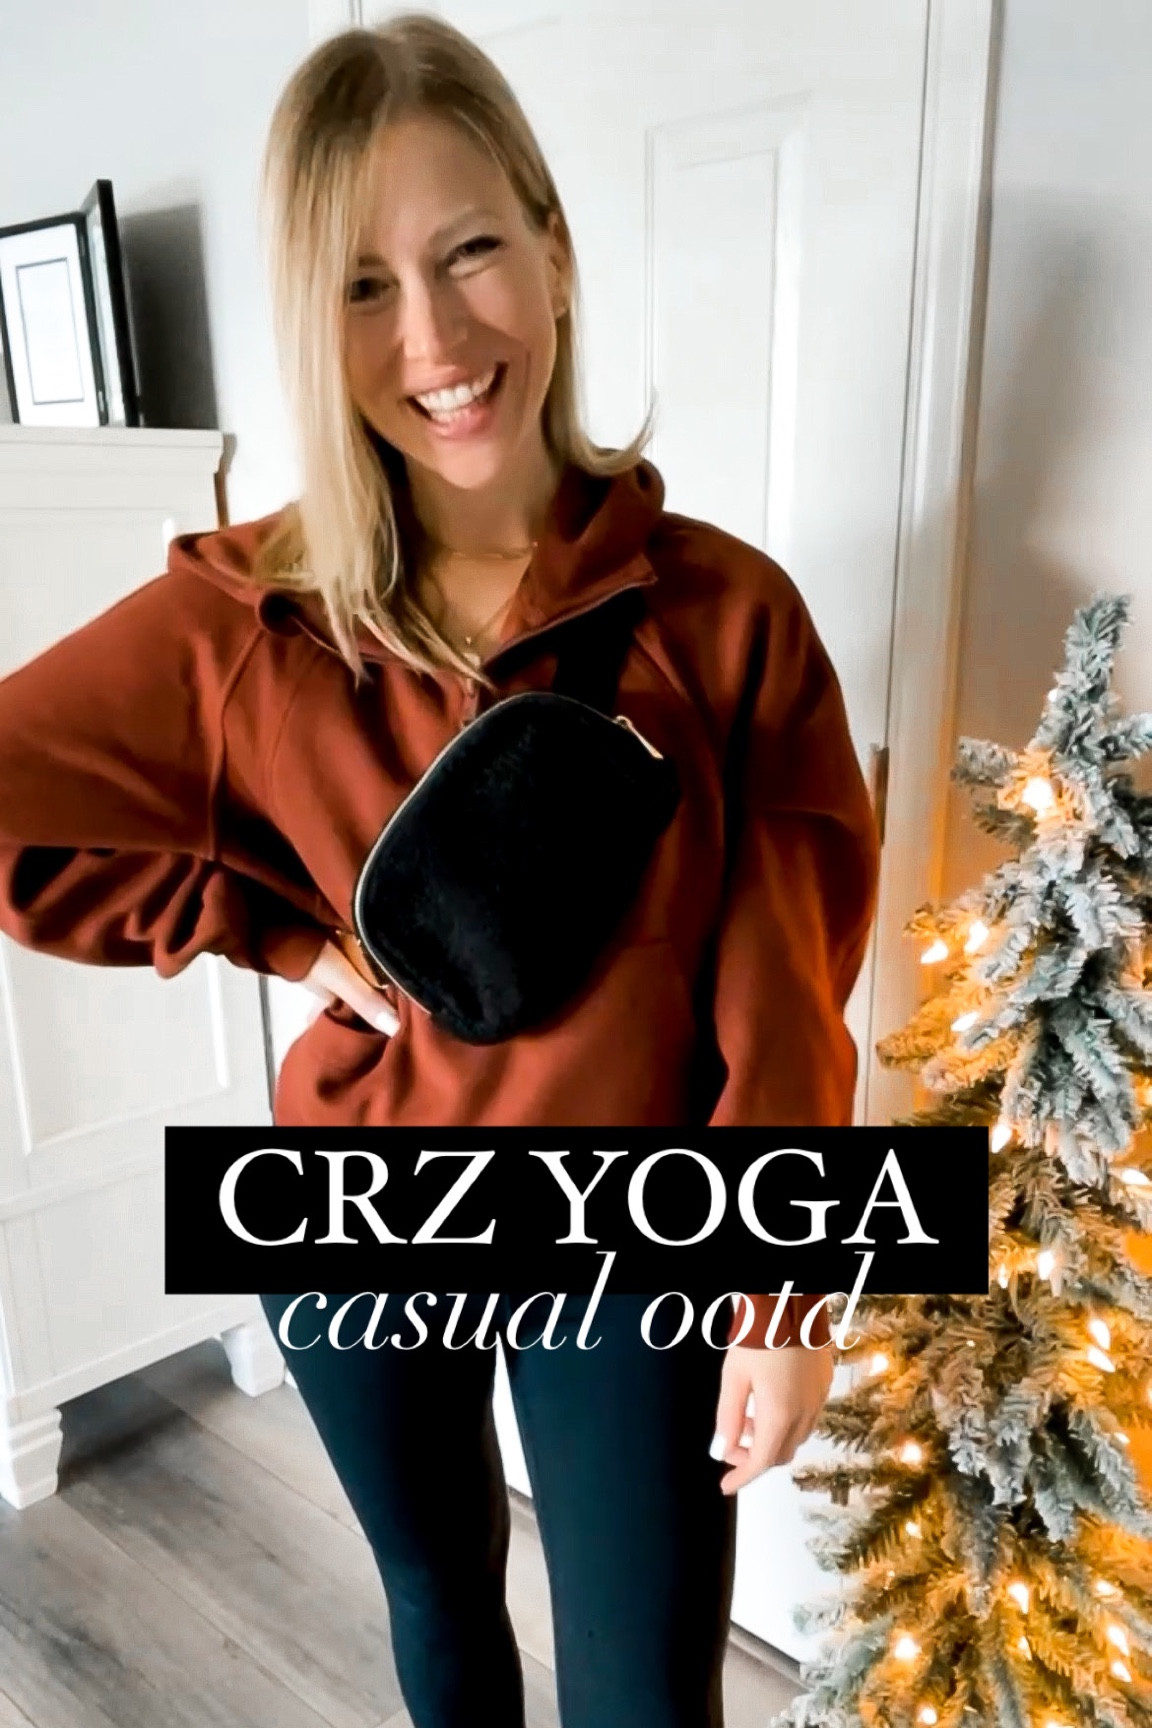 CRZ YOGA Fleece Lined Hoodies for Women Half-Zip Pullover Cropped